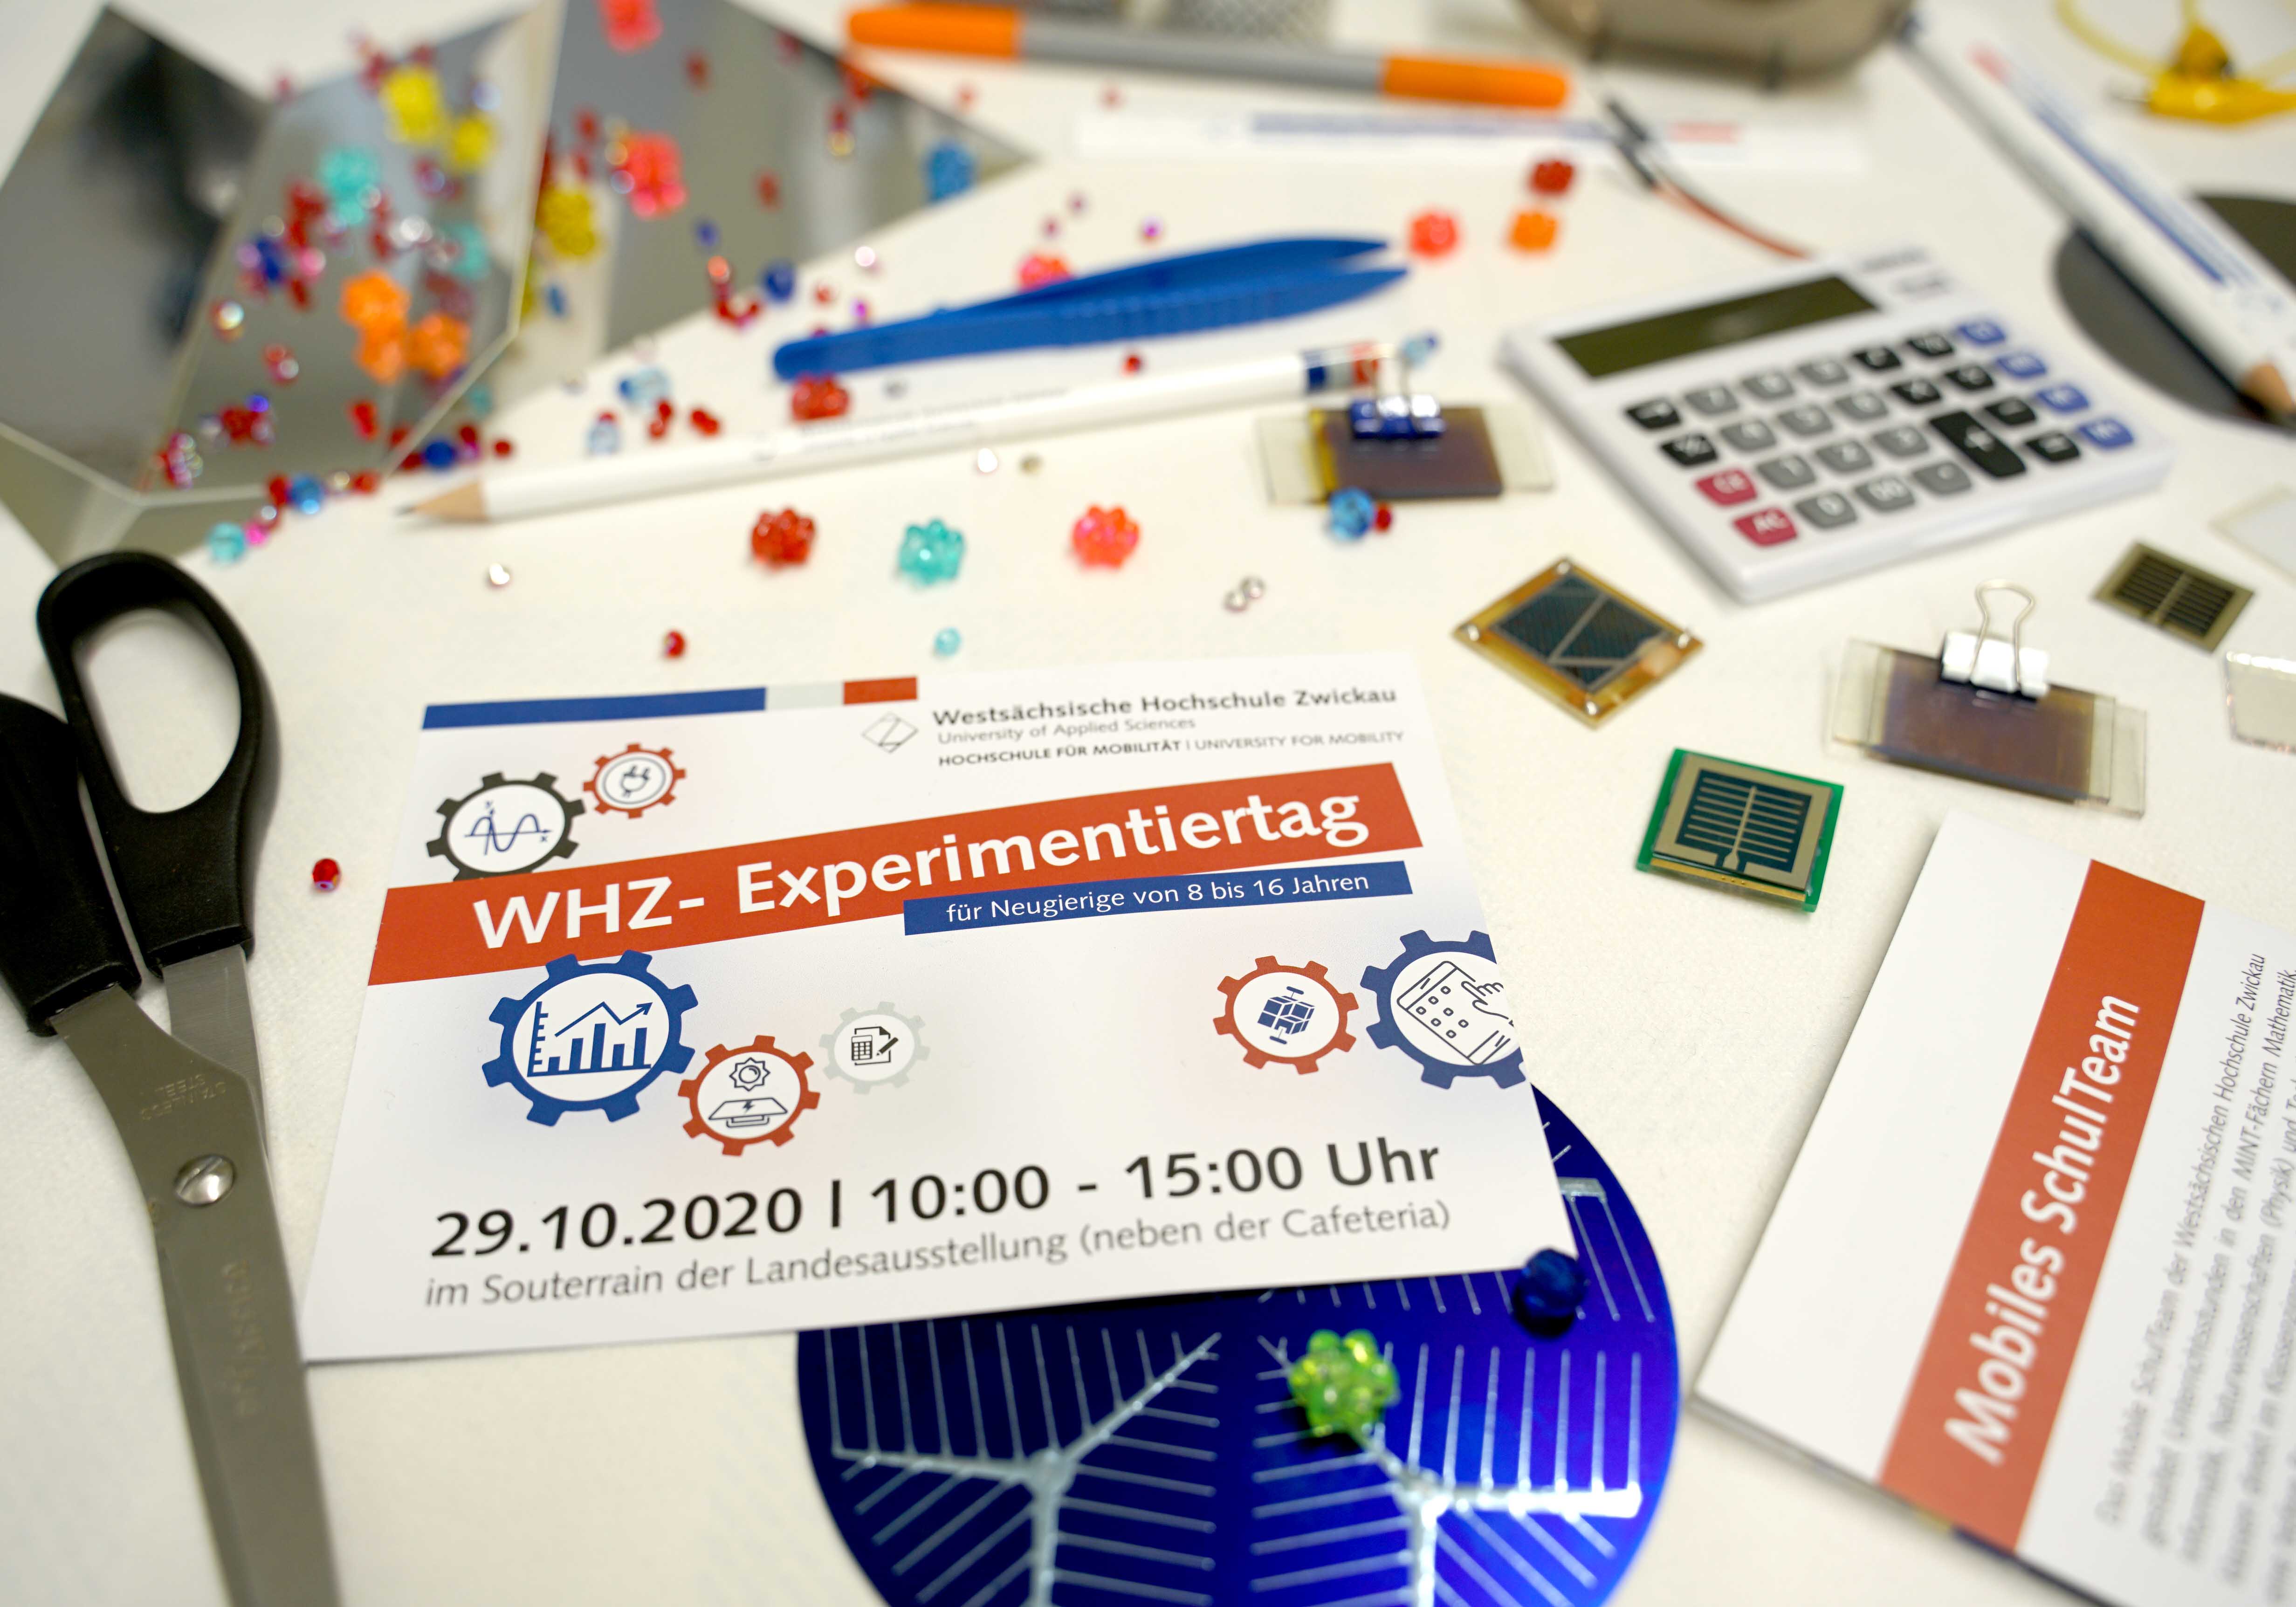 Foto: Diverse Gegenstände (Schere, Taschenrechner, Mikrochips, Stifte) liegen auf einem Schreibtisch. In der Mitte ein Flyer mit er Aufschrift "WHZ-Experimentiertag"